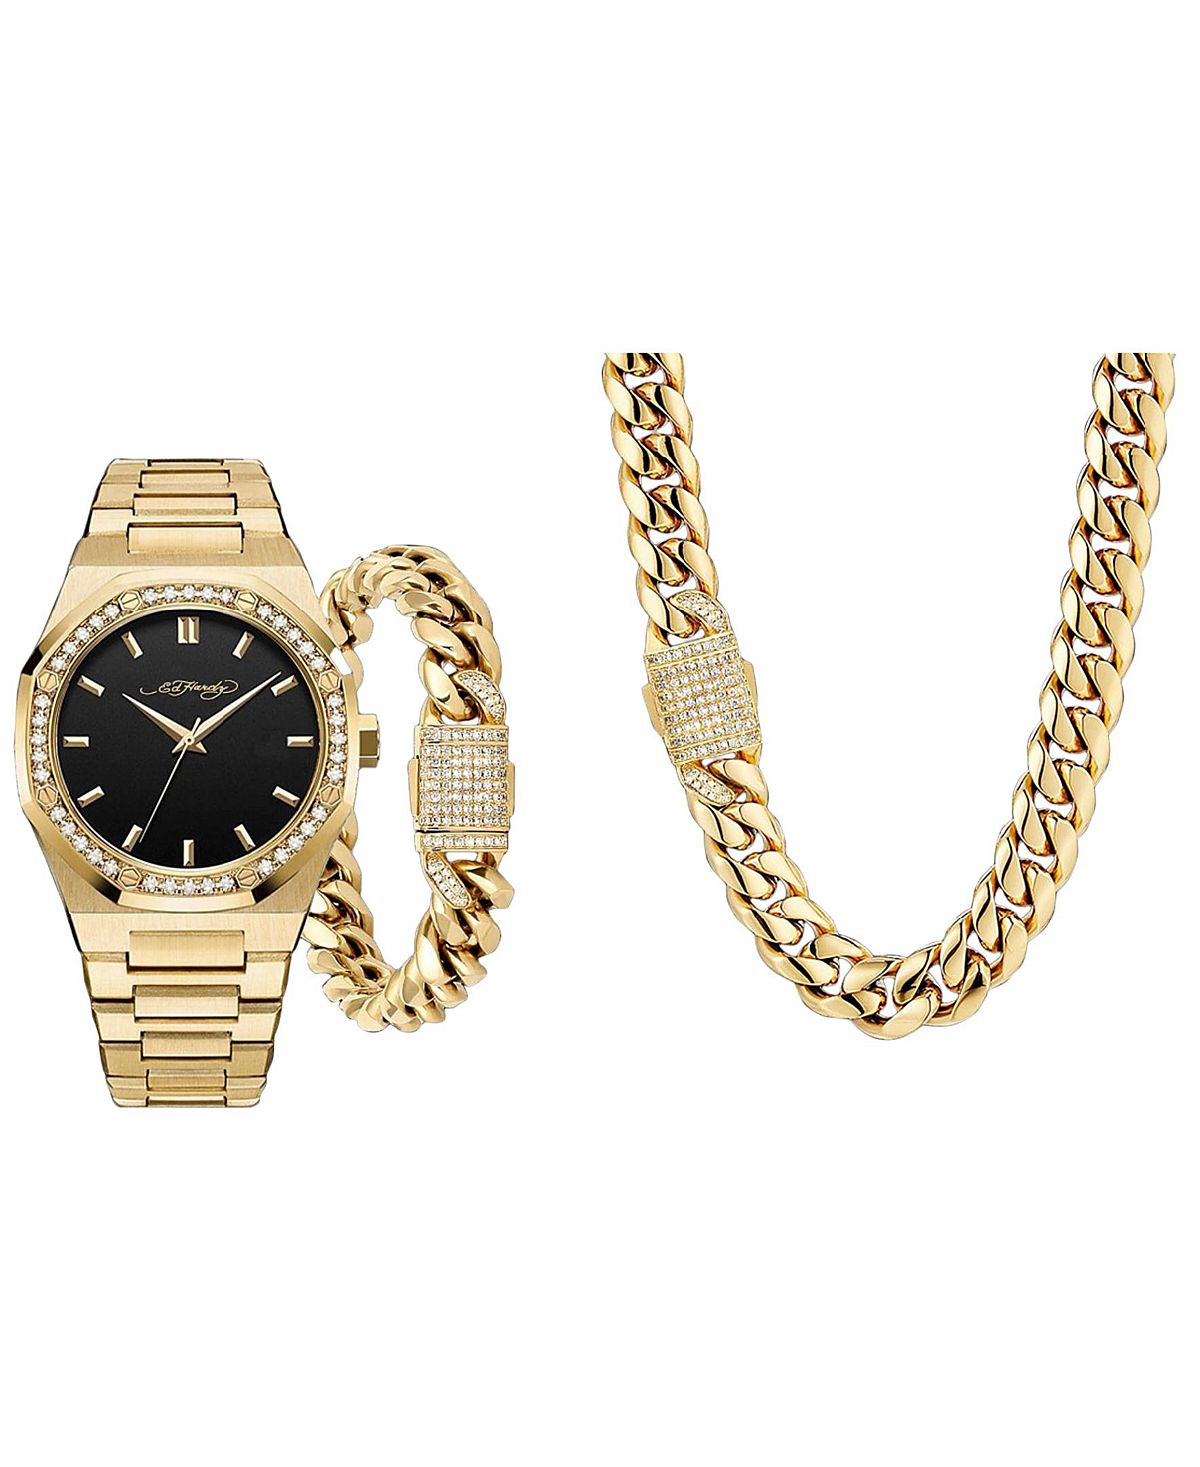 Мужские часы-браслет из блестящего золотистого металла, 42 мм, подарочный набор Ed Hardy кроссовки ed hardy bump black gold